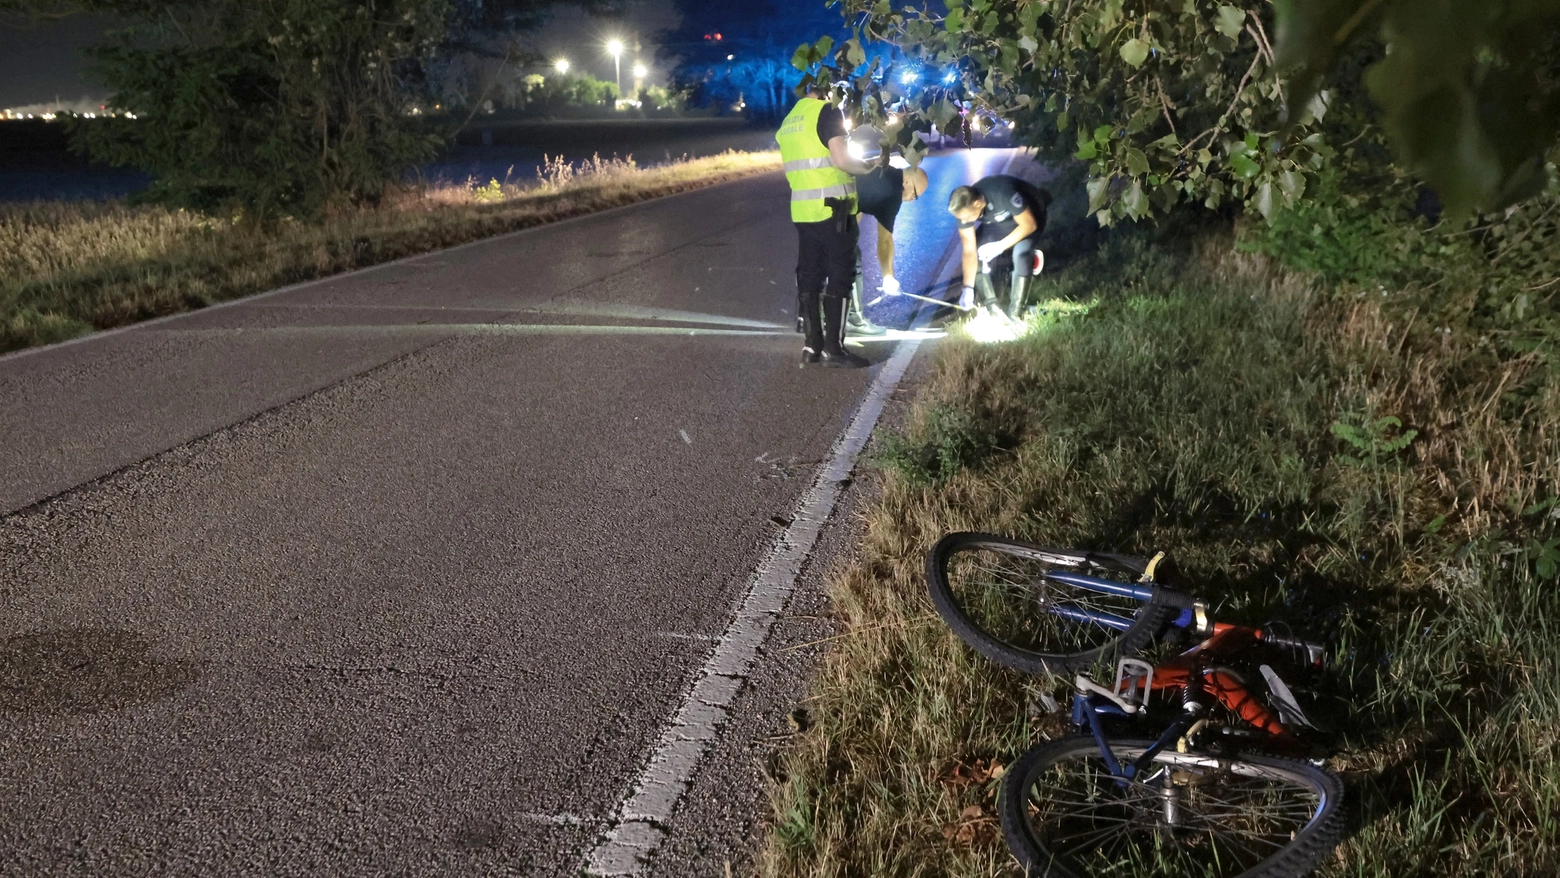 Schianto a Lido Adriano nella notte: cicliesta investito da una moto. I rilievi (foto Zani)